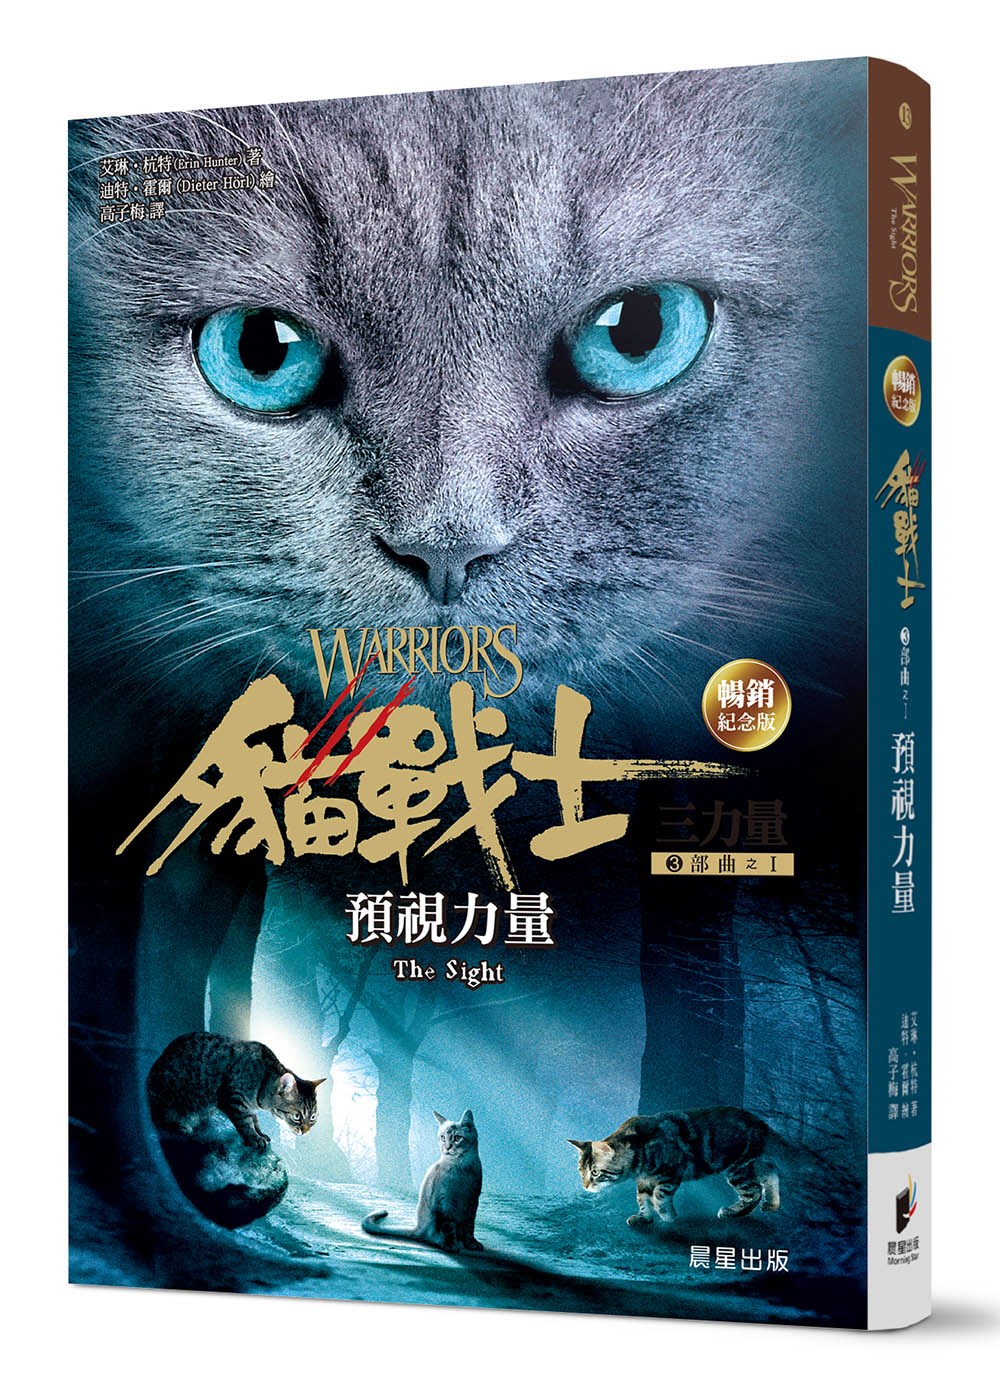 貓戰士暢銷紀念版-三部曲三力量之一-預視力量